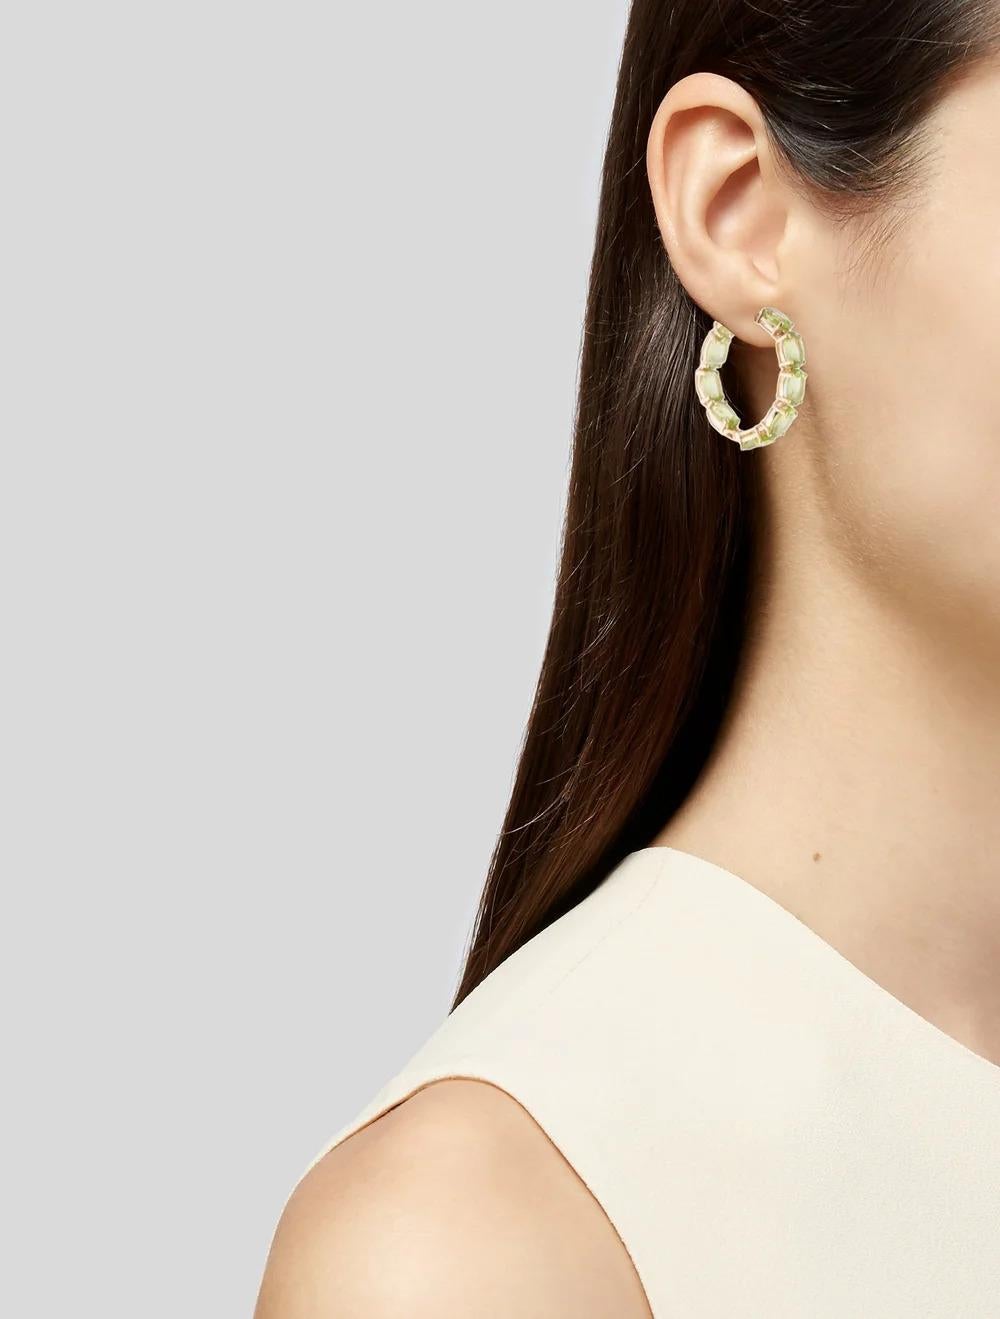 Wir präsentieren unsere atemberaubenden 14K Gelbgold Inside-Out Hoop Ohrringe, geschmückt mit 9,03 Karat ovalen modifizierten Brillant Peridot Edelsteinen, die Eleganz und Raffinesse ausstrahlen. Diese exquisiten Ohrringe sind eine zeitlose